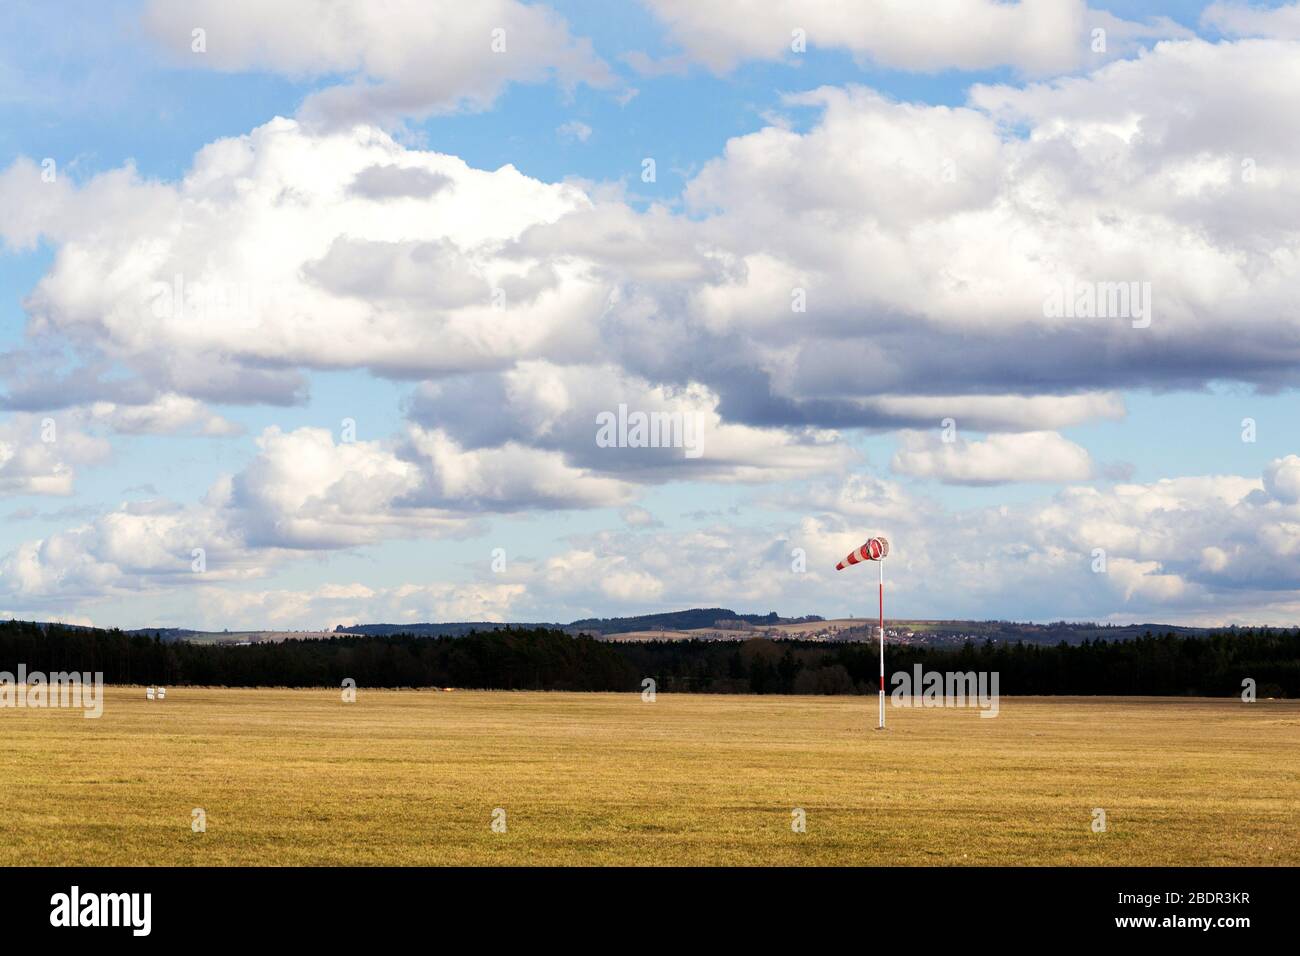 Des chaussettes ventrales rouges et blanches sur un aérodrome herbacé vide, des nuages spectaculaires en arrière-plan, des prévisions météorologiques venteuses et un concept de circulation aérienne Banque D'Images